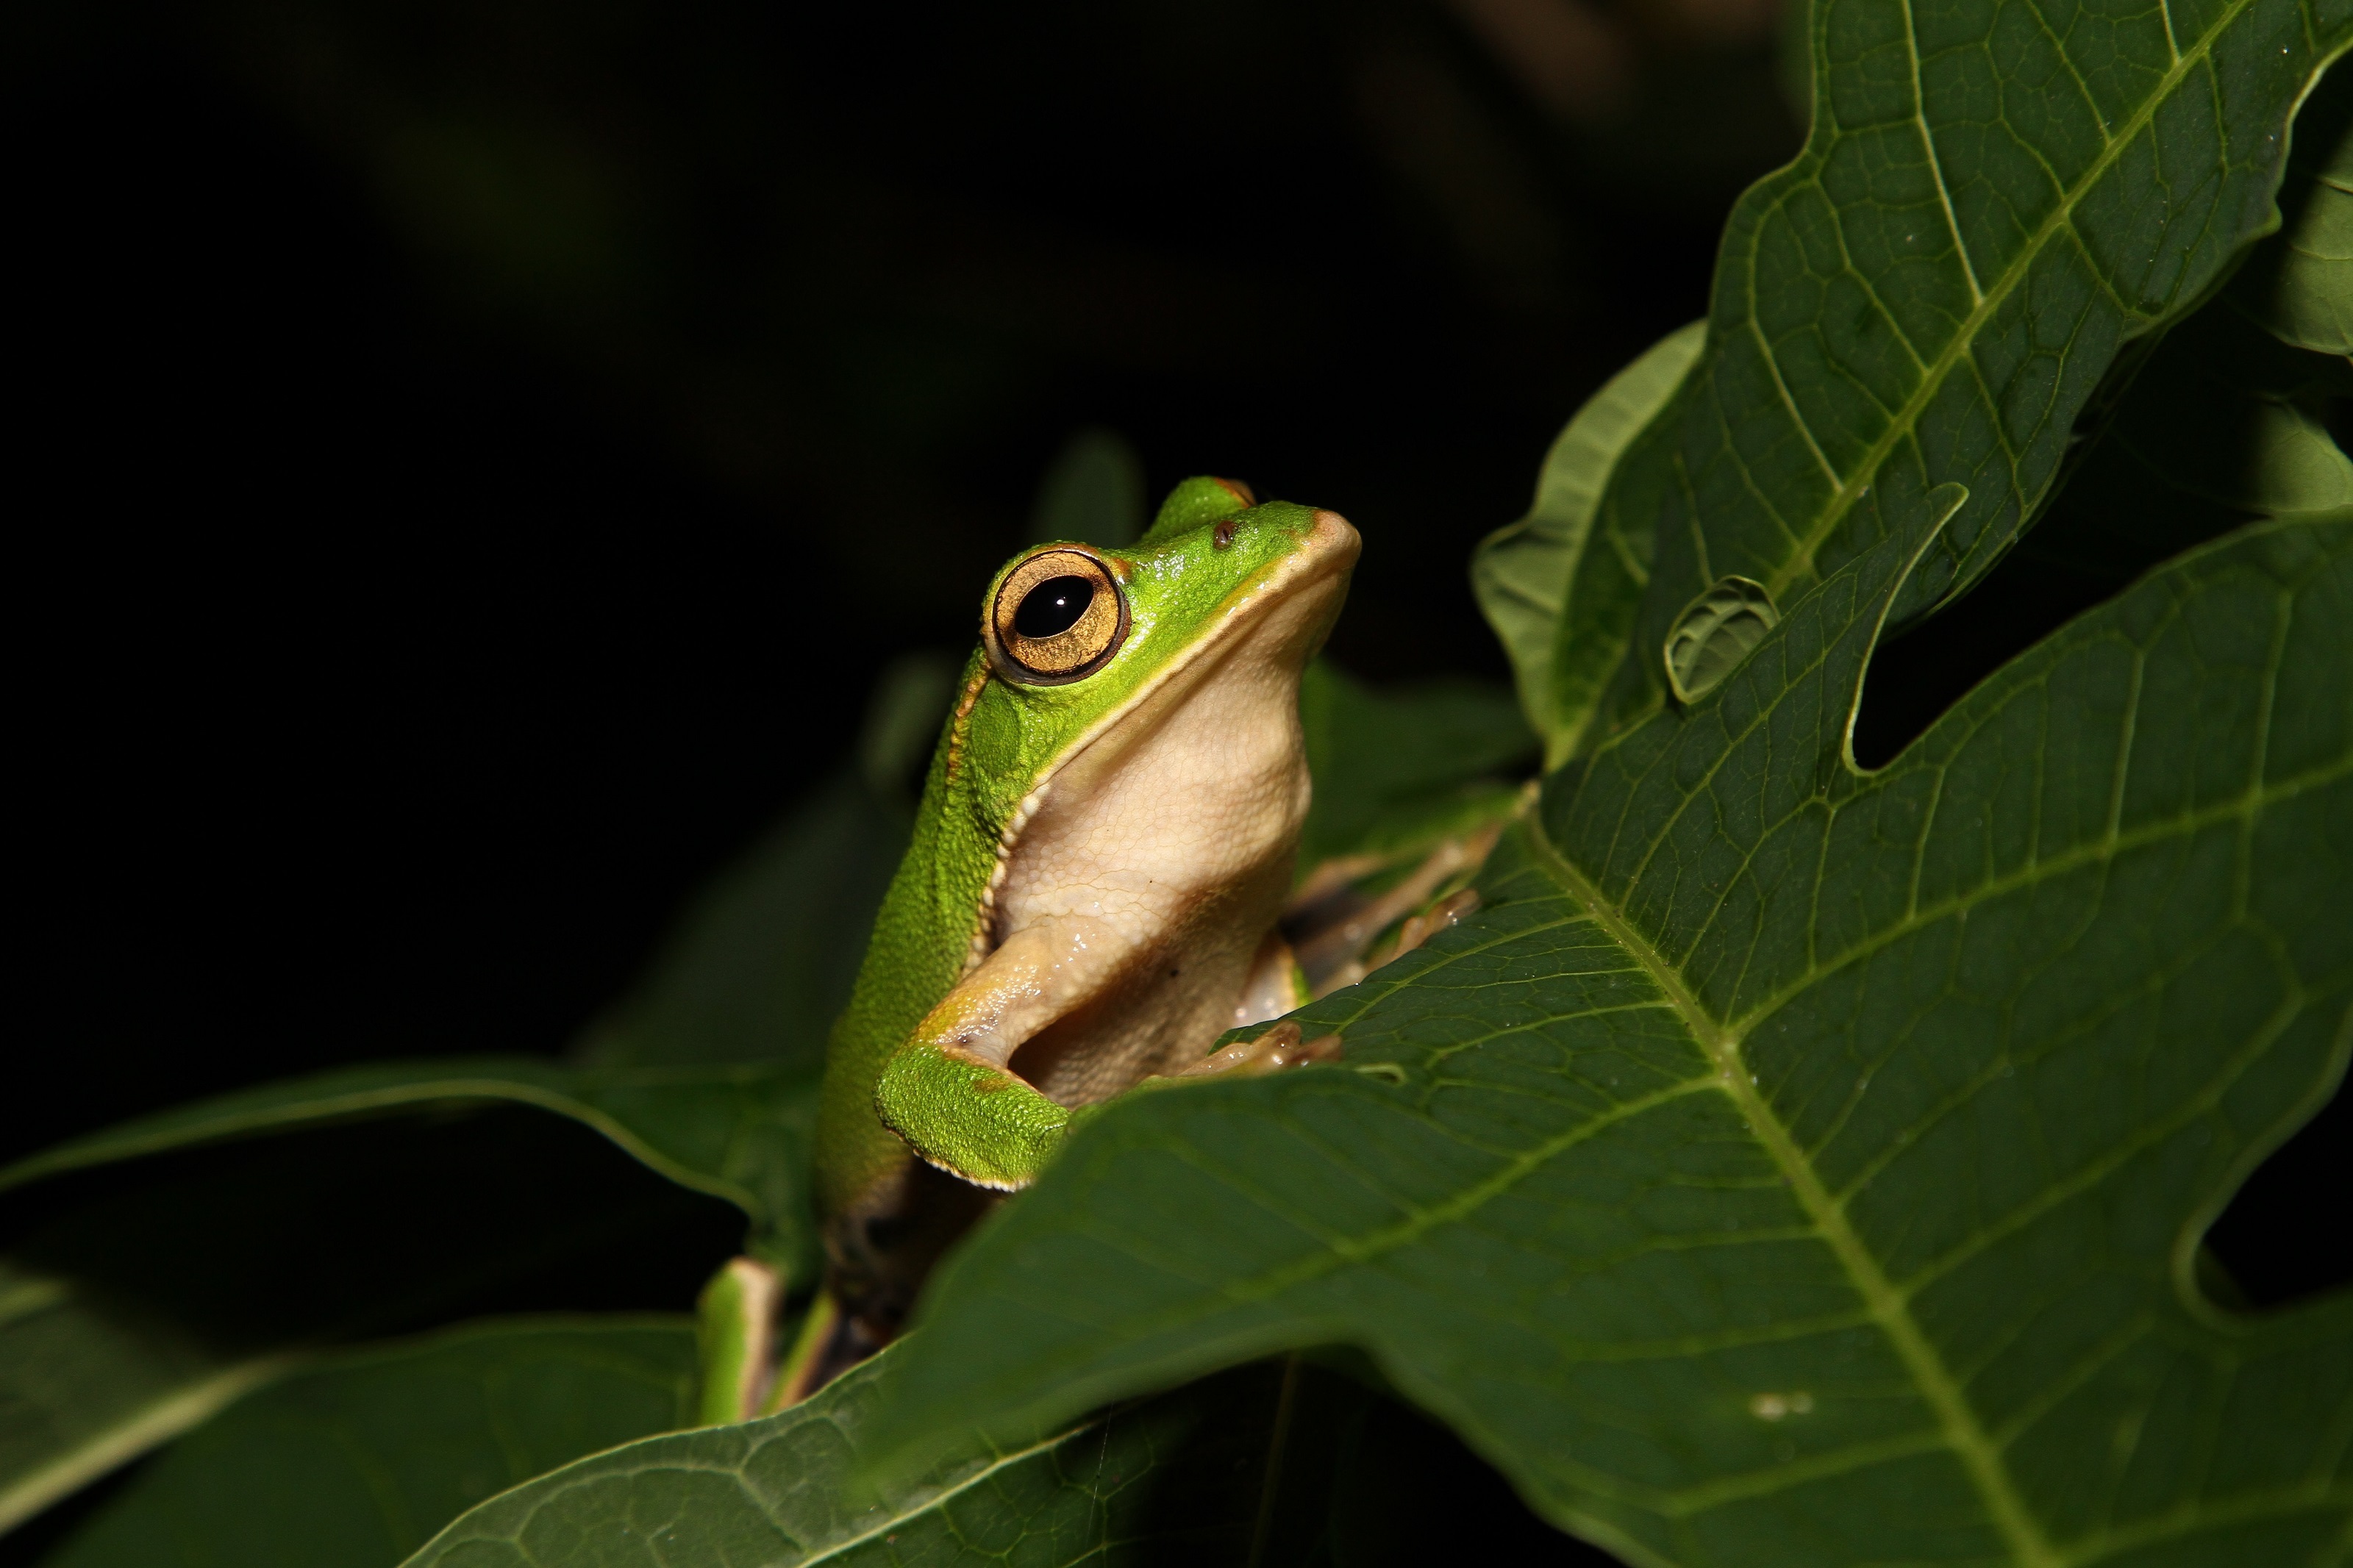 Emerald eyed tree frog photo